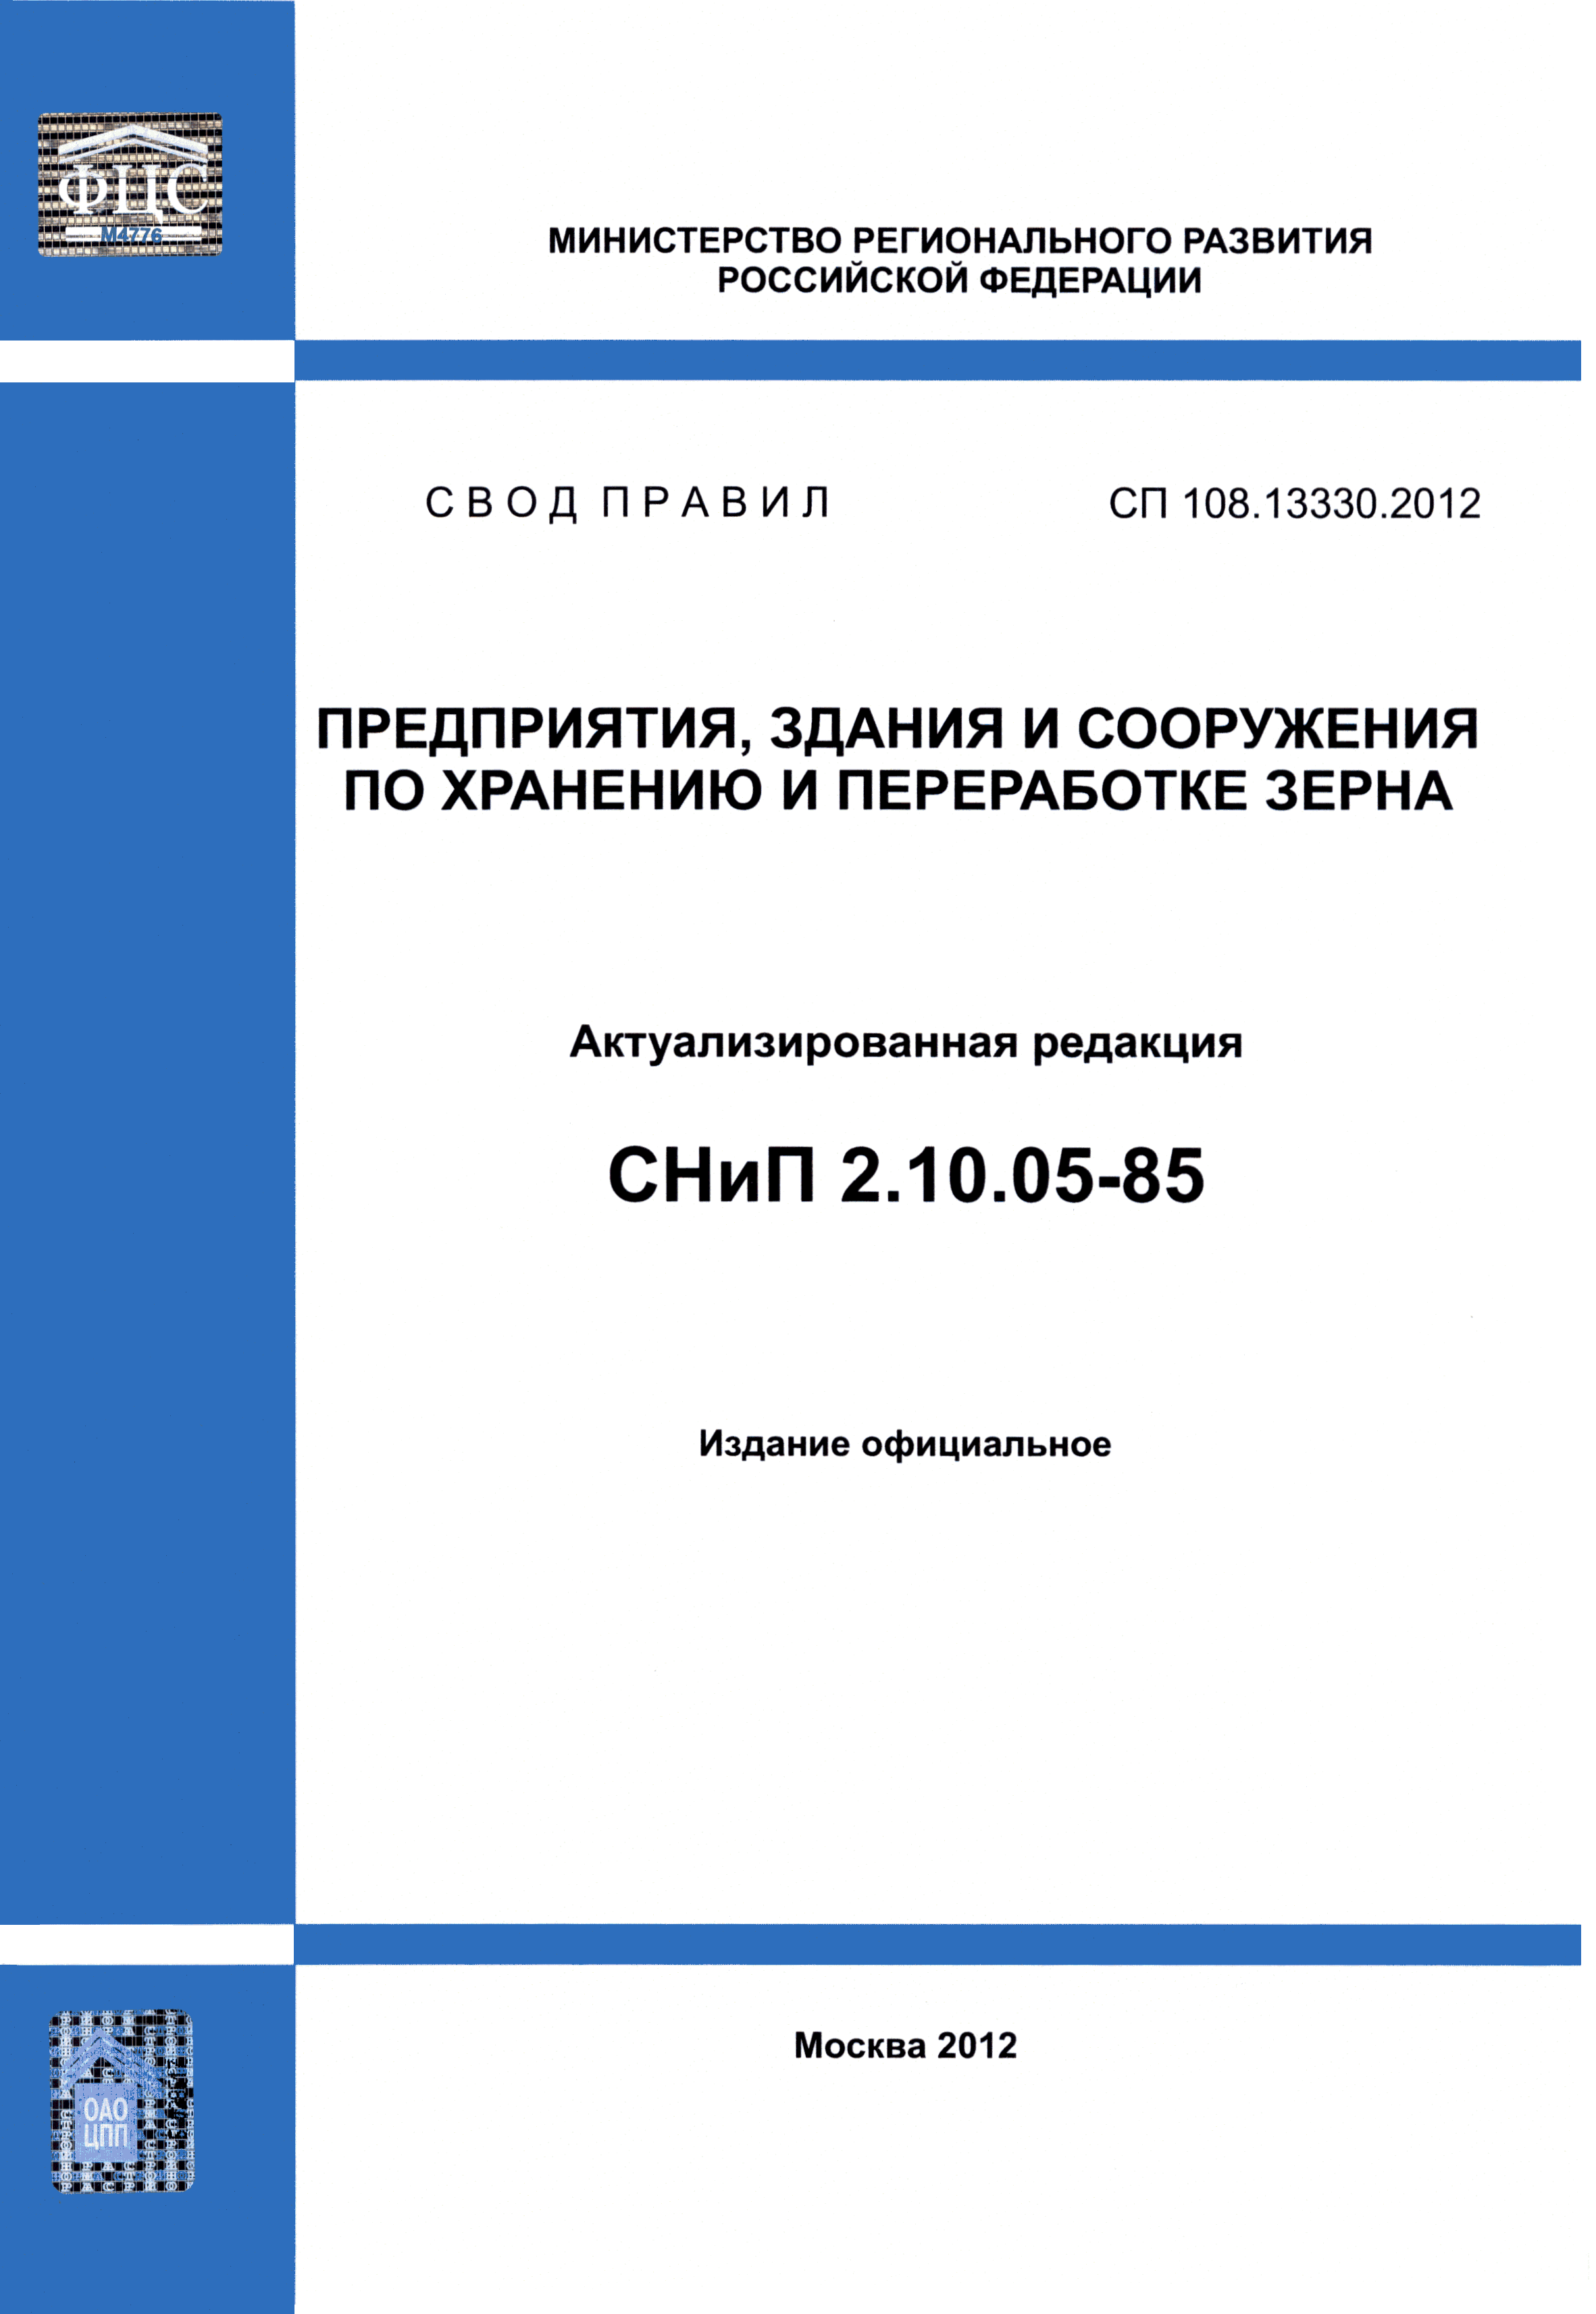 СП 108.13330.2012